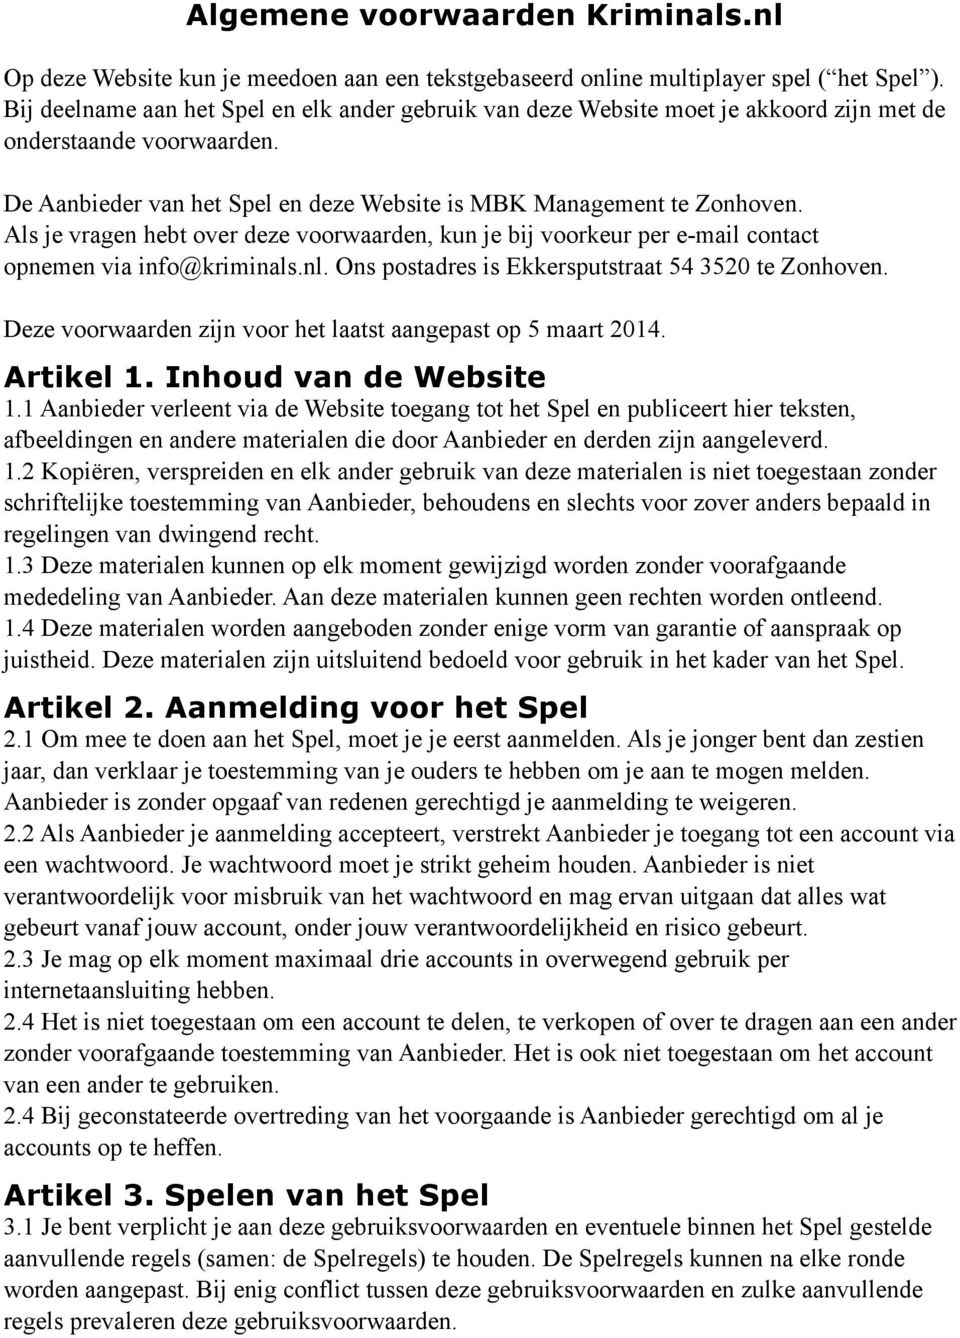 Als je vragen hebt over deze voorwaarden, kun je bij voorkeur per e-mail contact opnemen via info@kriminals.nl. Ons postadres is Ekkersputstraat 54 3520 te Zonhoven.